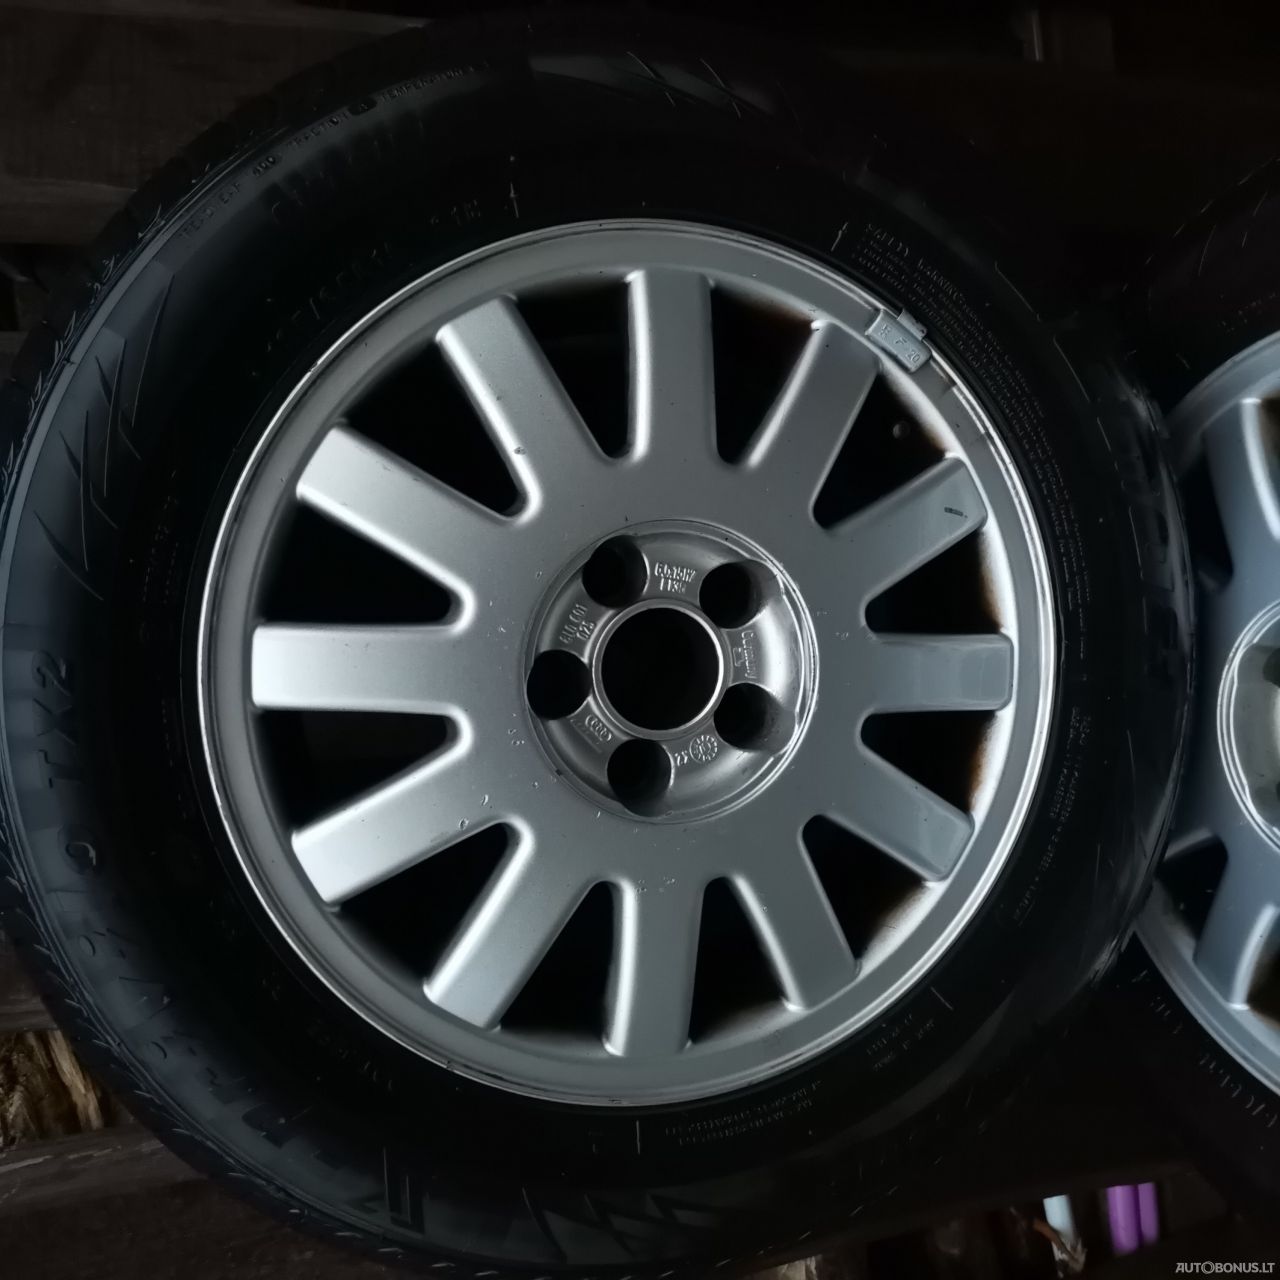 Tracmax X-privilo S130 summer tyres